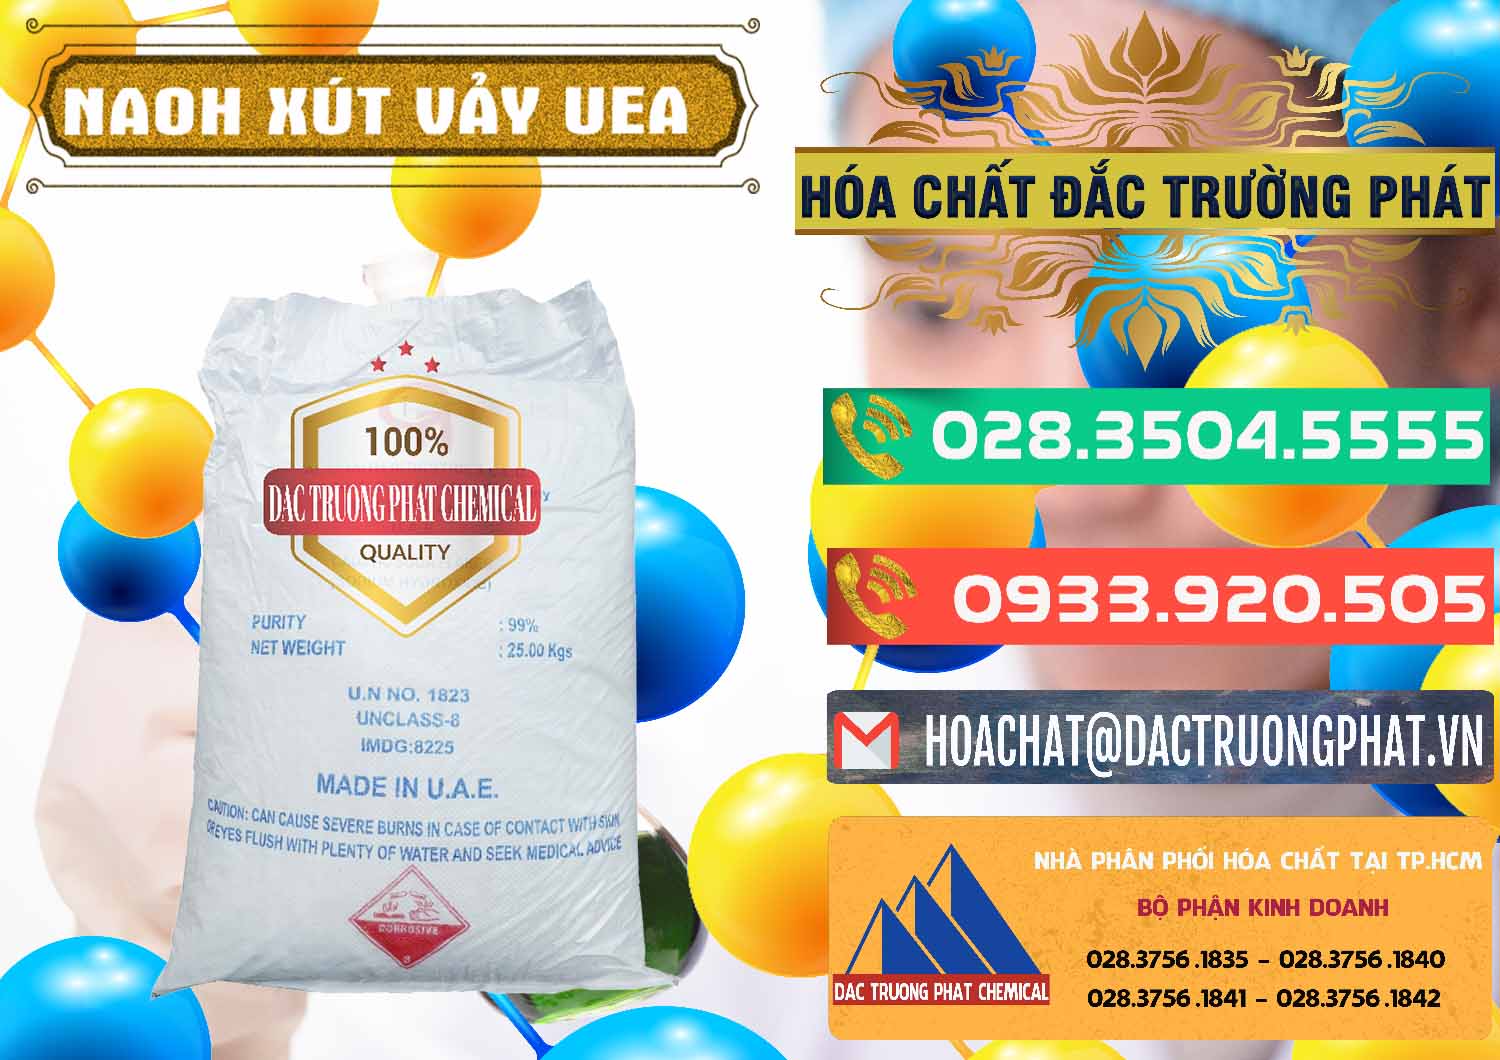 Công ty chuyên phân phối _ bán Xút Vảy - NaOH Vảy UAE Iran - 0432 - Nhà nhập khẩu ( cung cấp ) hóa chất tại TP.HCM - congtyhoachat.com.vn